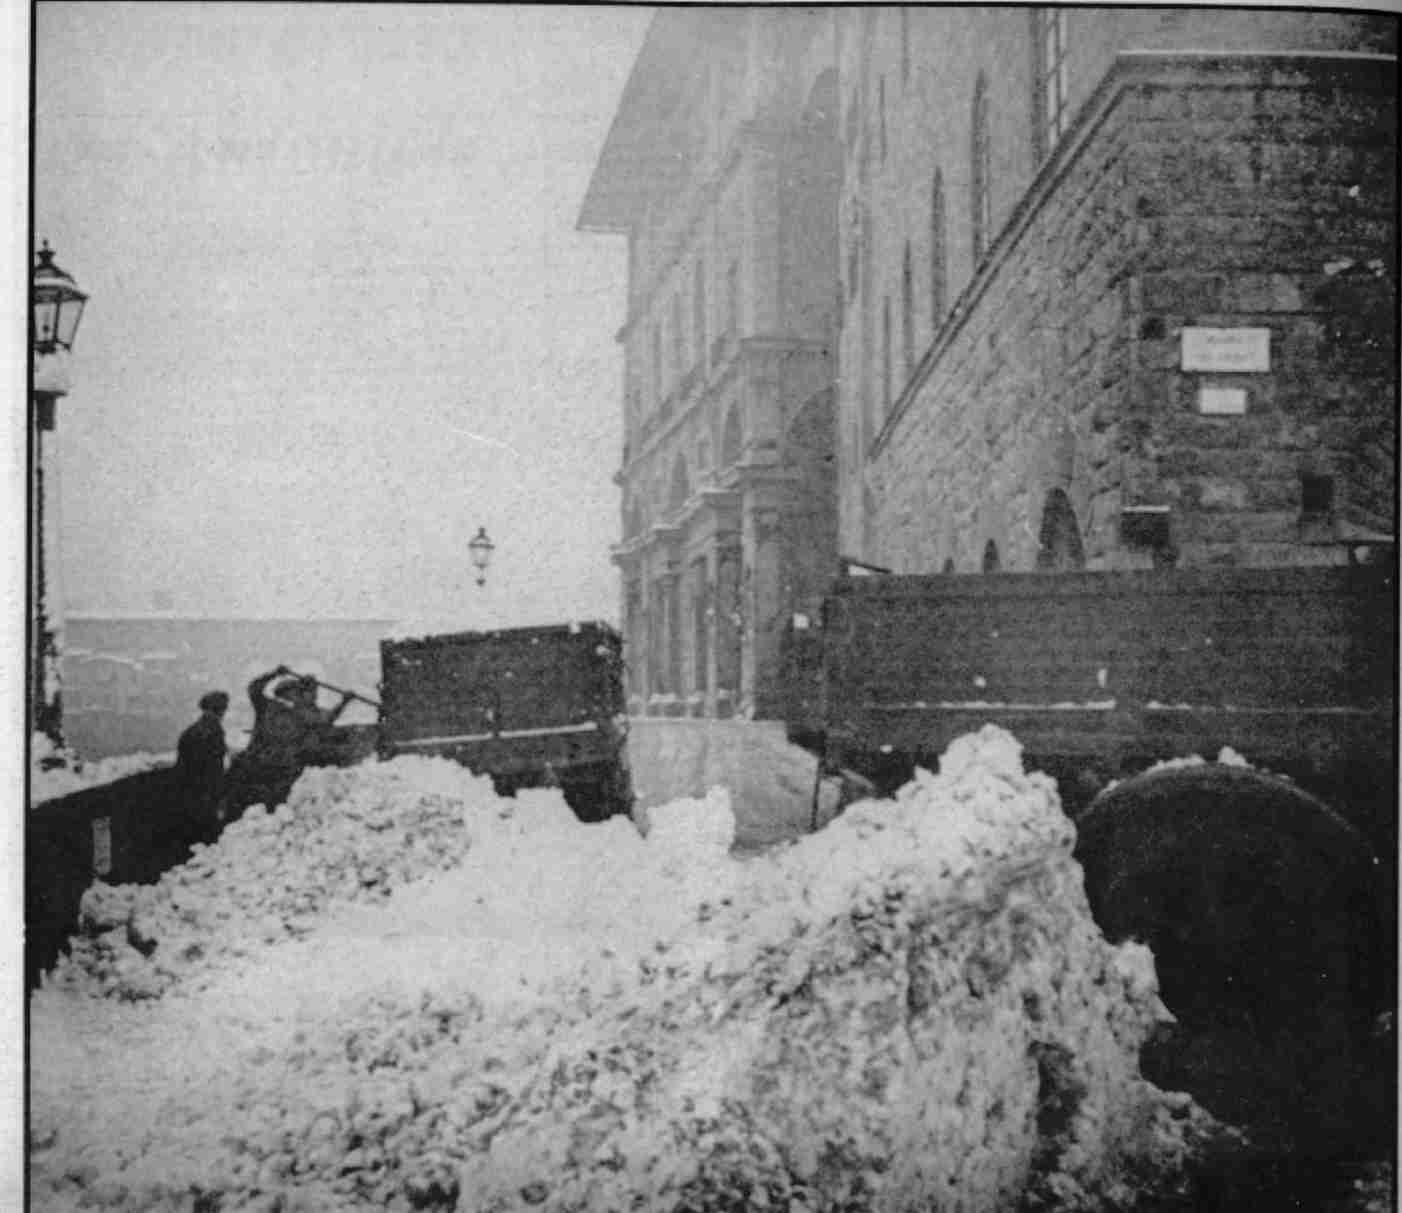 neve a firenze nel 1929, neve scaricata in Arno presso Piazza dei Giudici